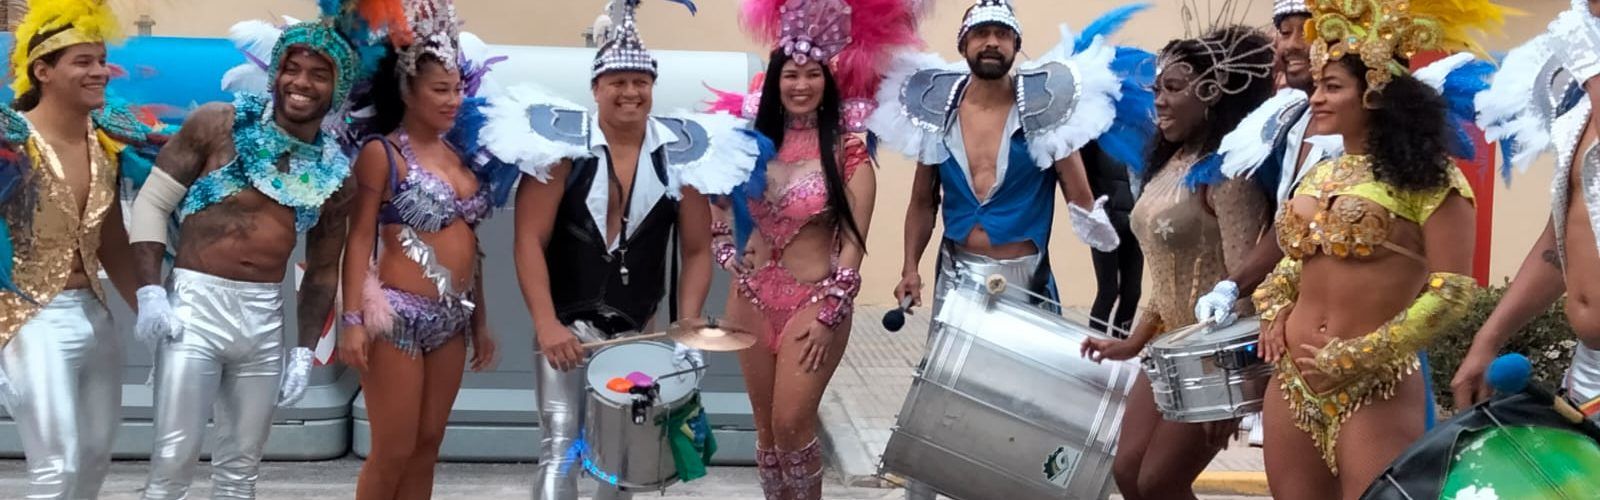 25 fotos i un vídeo de la desfilada del Carnaval d’Alcanar